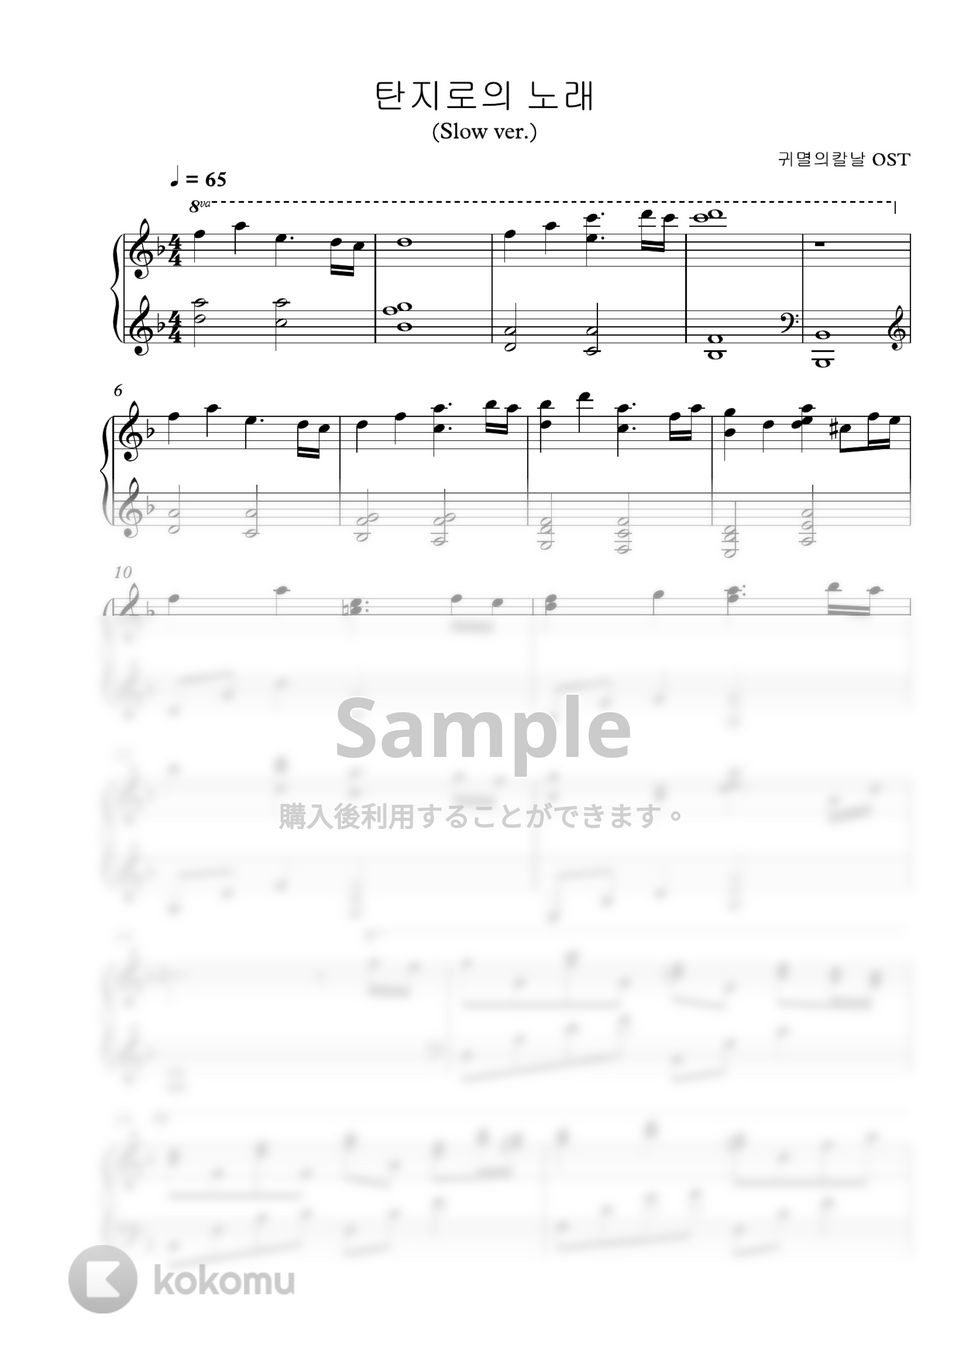 鬼滅の刃 OST - 竈門炭治郎のうた (Calm piano ver.🎹) by PARK- DDOK DDOK